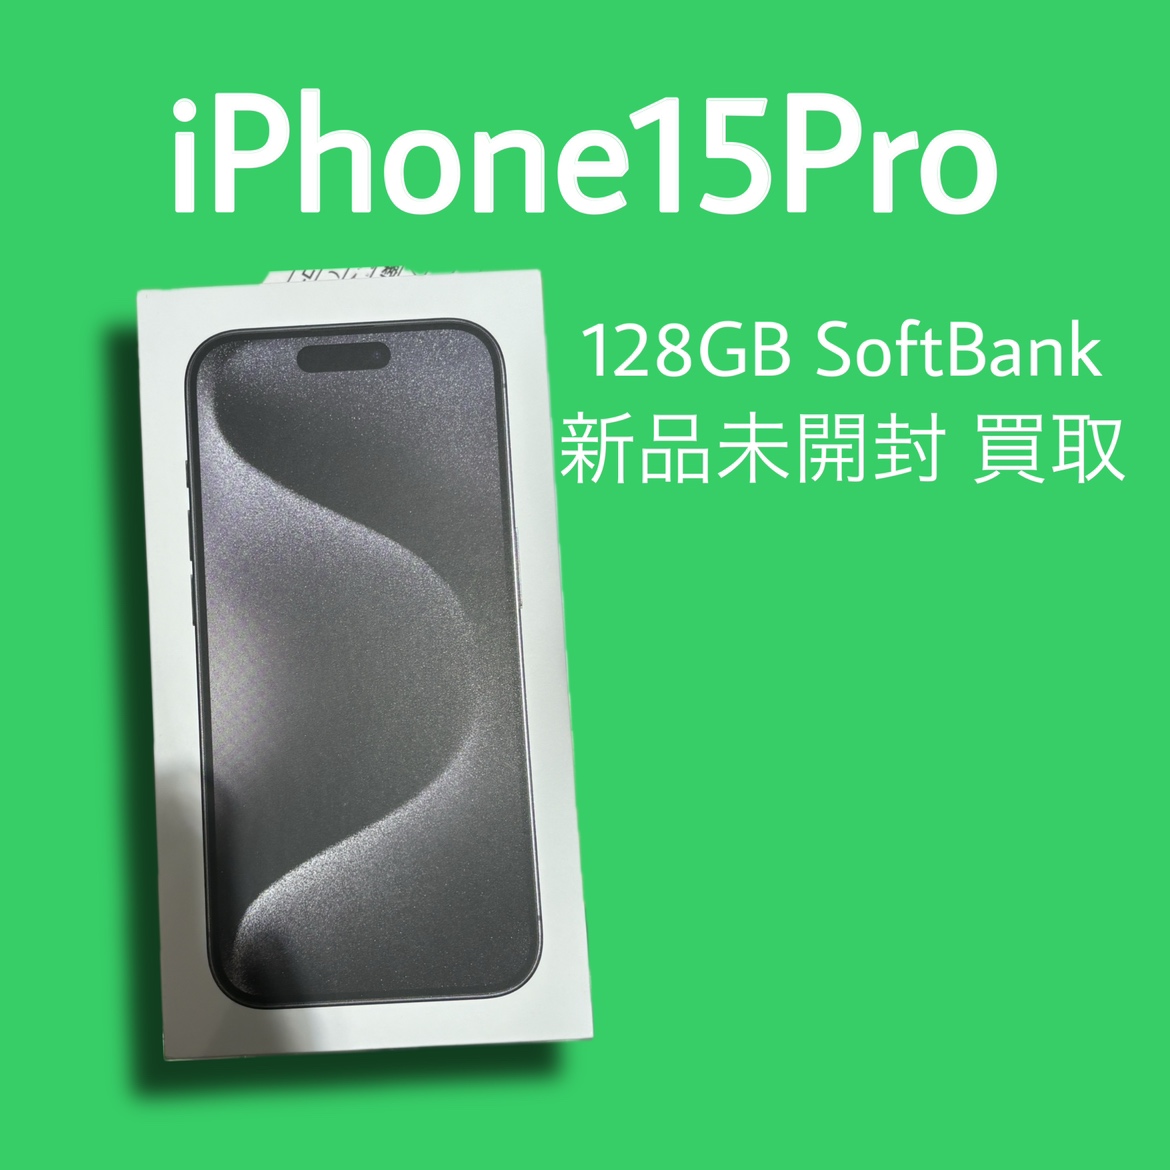 iPhone15Pro・128GB・Softbank・△・新品未開封品【天神地下街店】